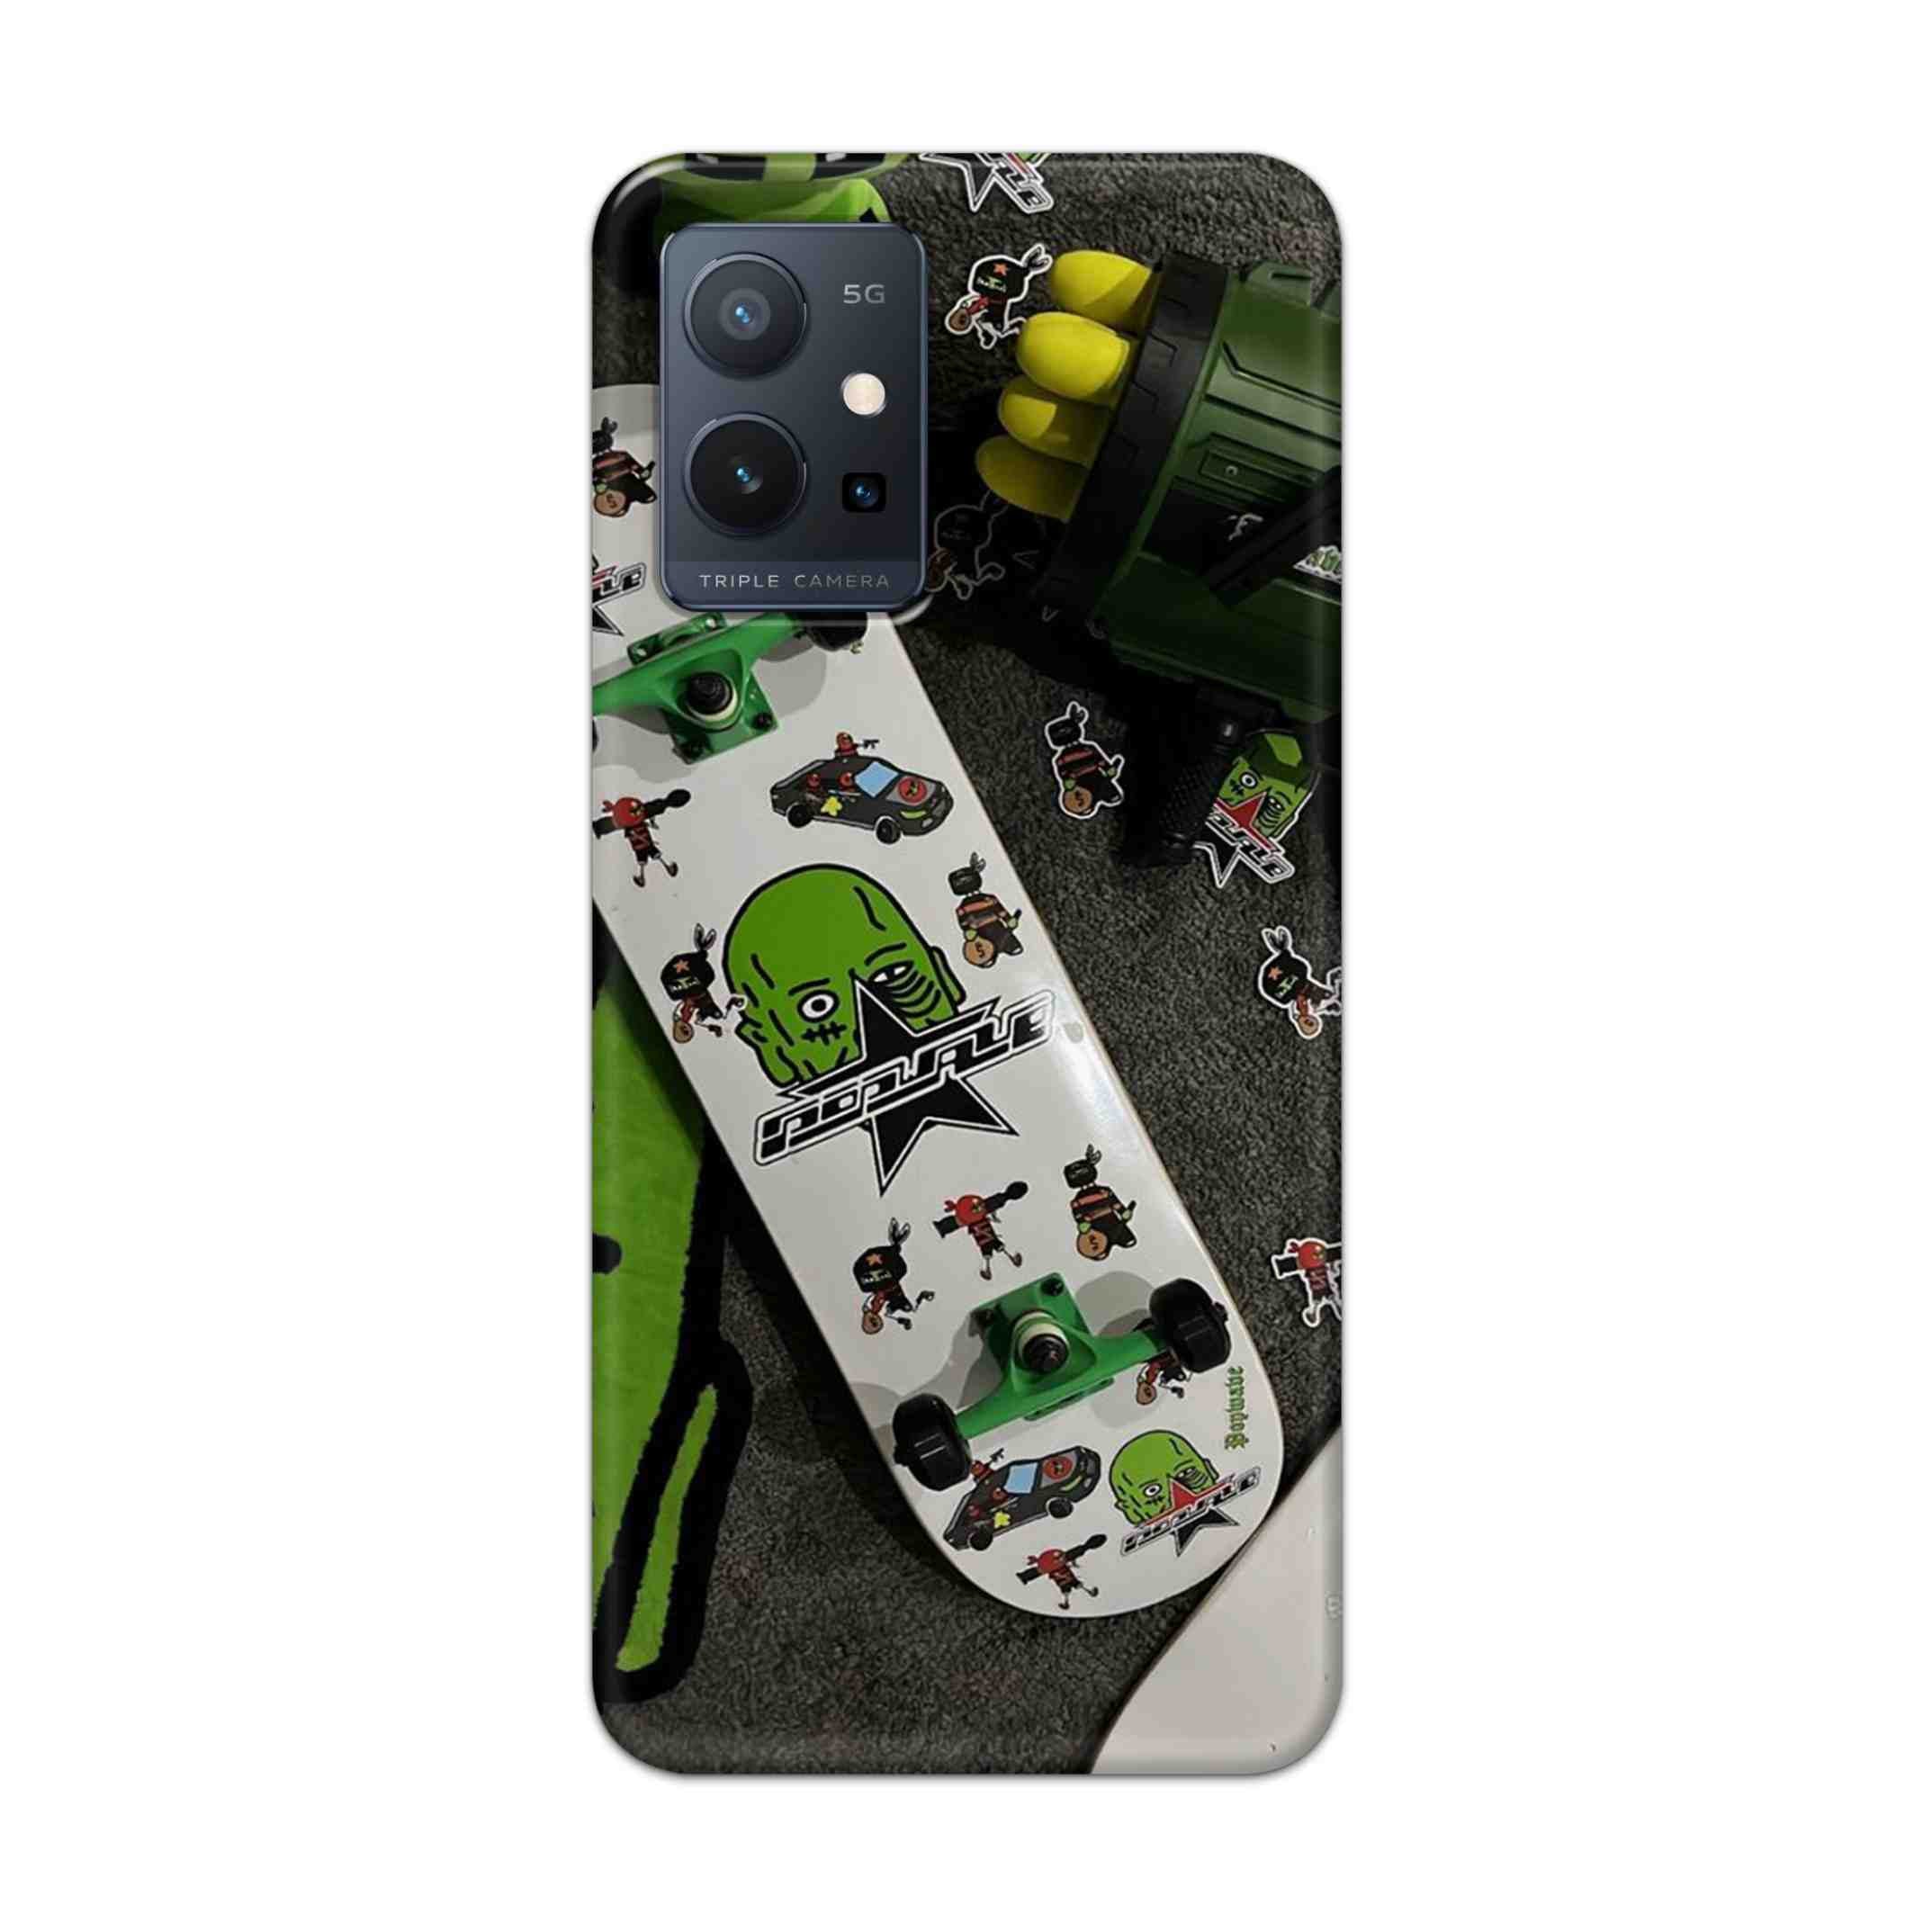 Buy Hulk Skateboard Hard Back Mobile Phone Case Cover For Vivo T1 5G Online